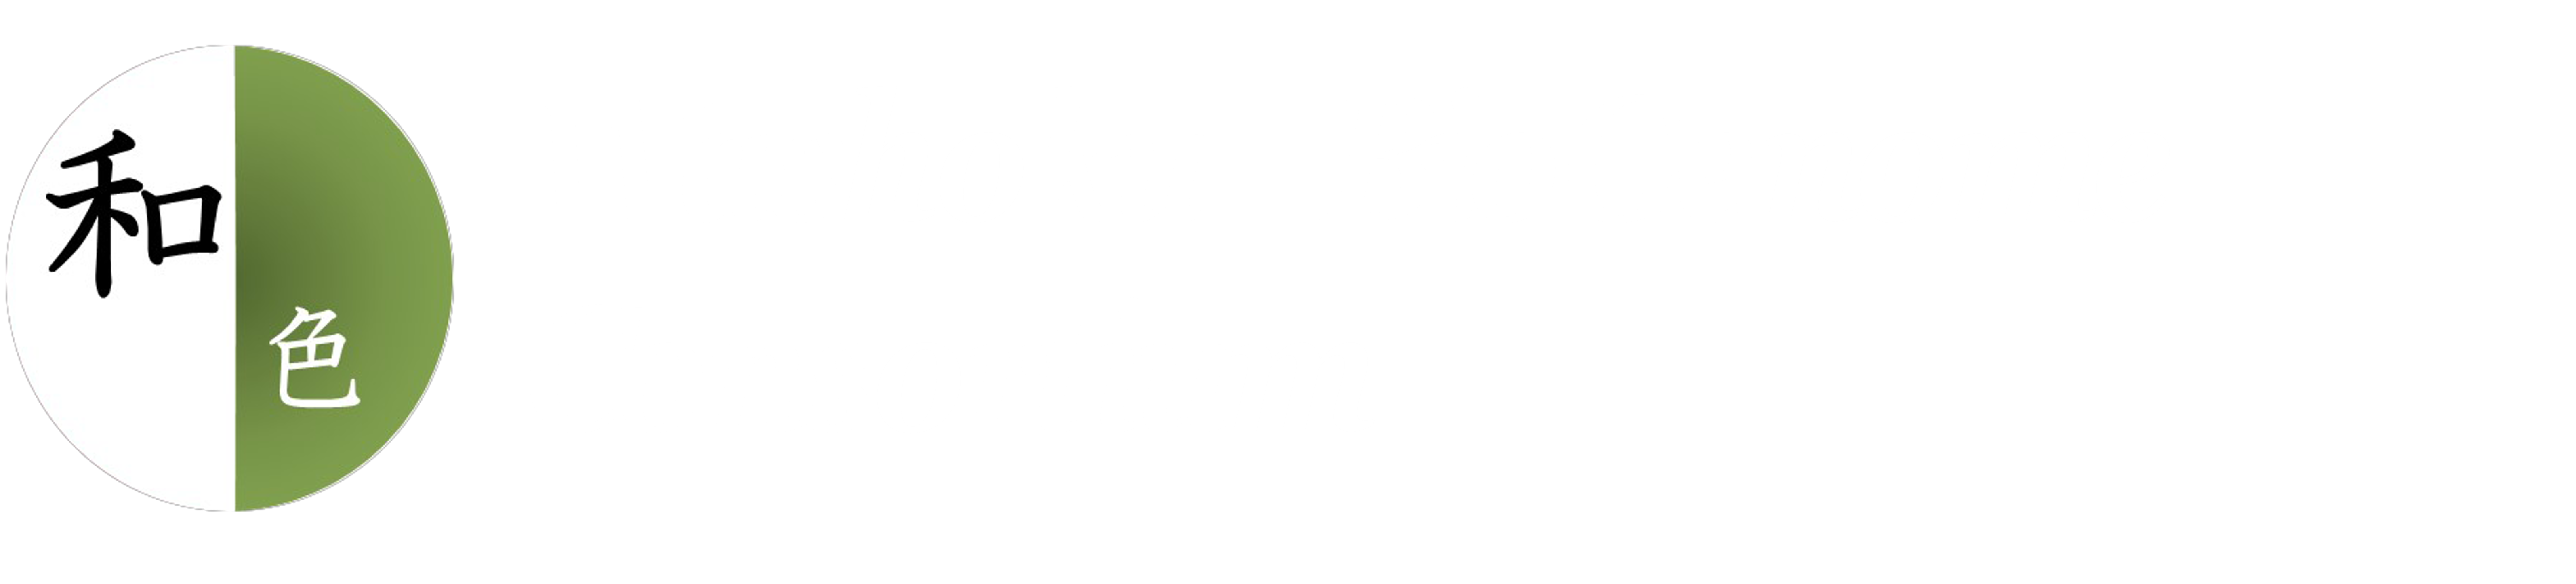 Washoku BioGenome Consortium